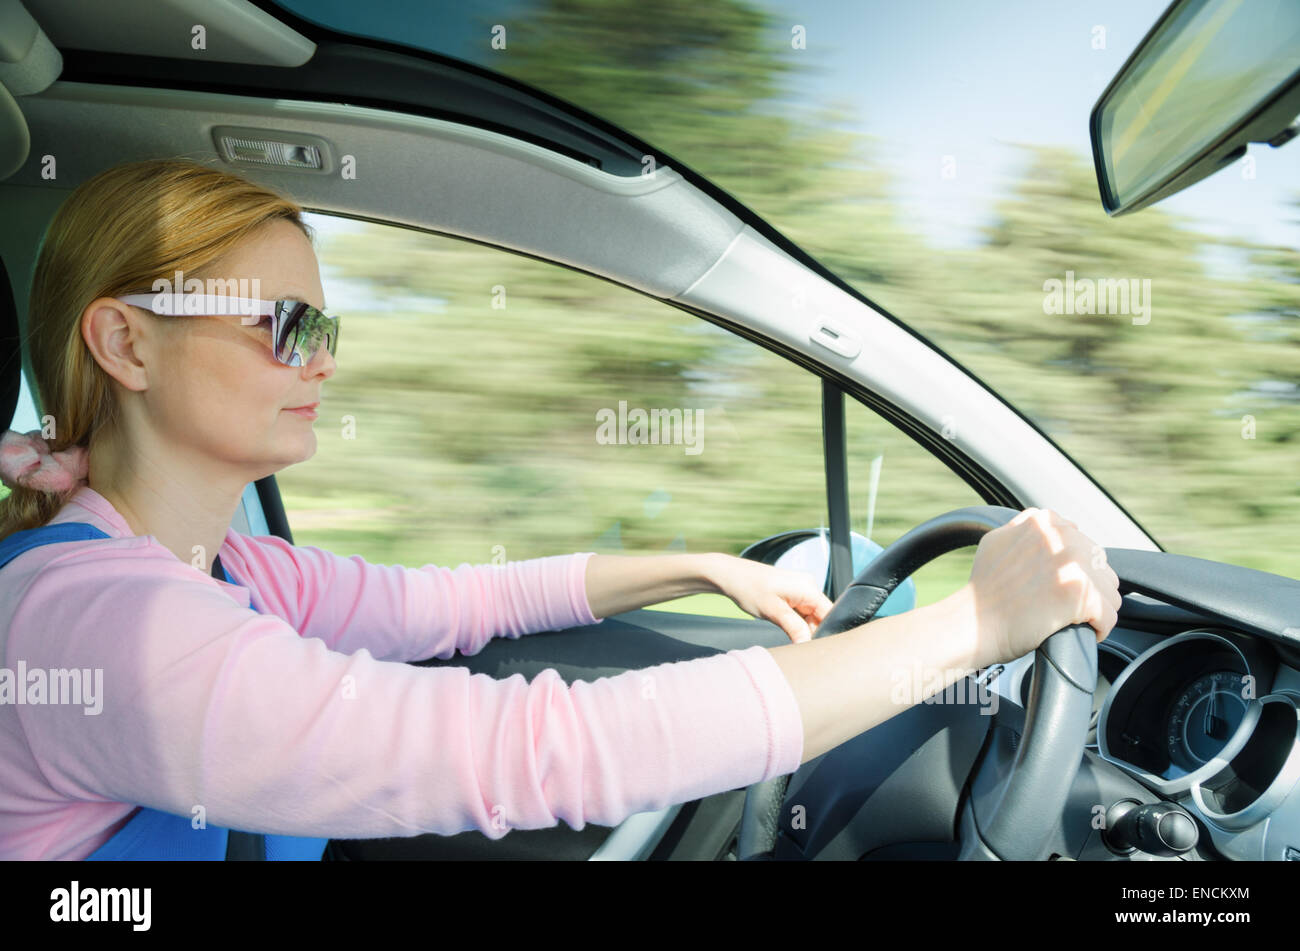 Pretty Woman in occhiali da sole la guida veloce auto con parabrezza panoramico. La funzione slow shutter a velocità elevata sfocati in movimento sullo sfondo. Foto Stock